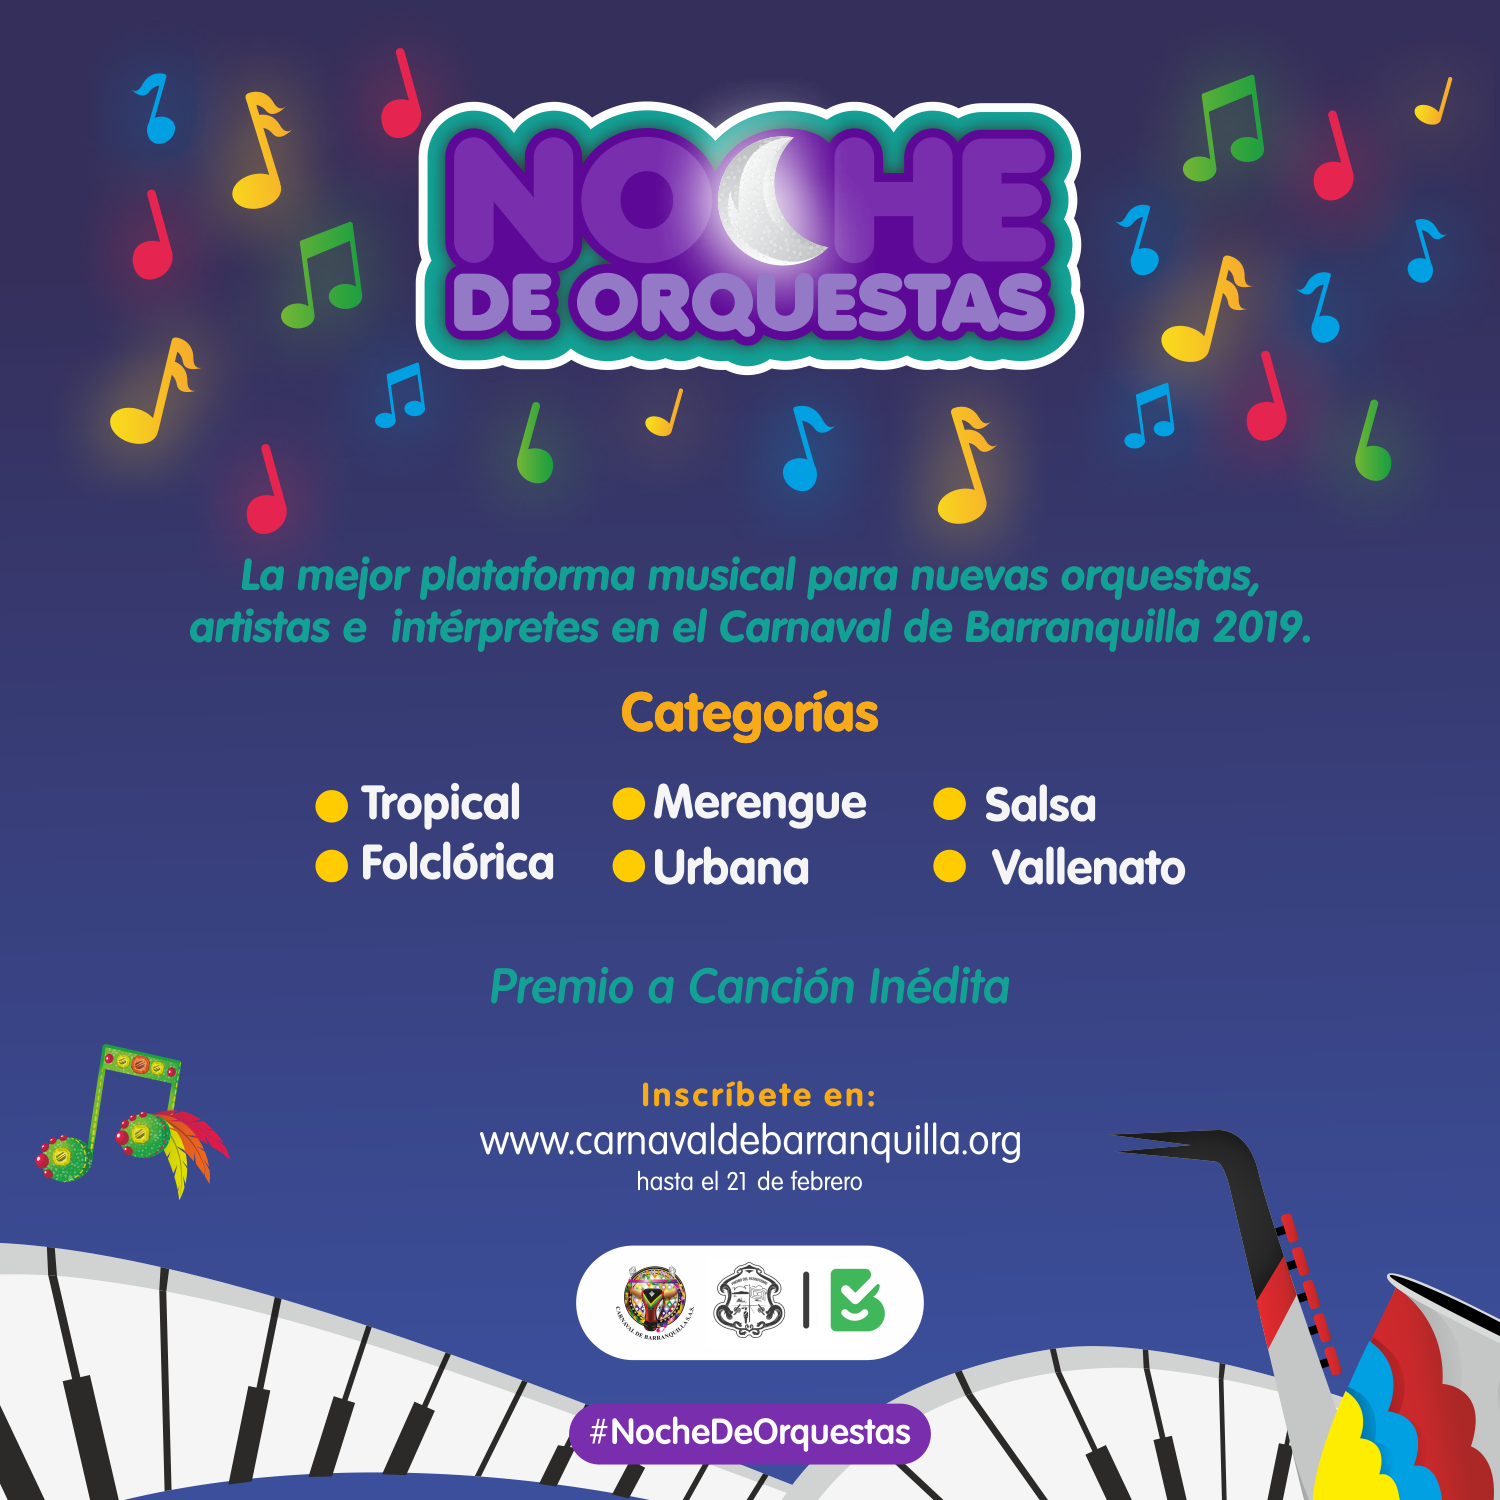 Noche de Orquestas 2019 ¡Para que lo baile todo el mundo!, porque, ¡Quien lo vive, es Quien lo goza!